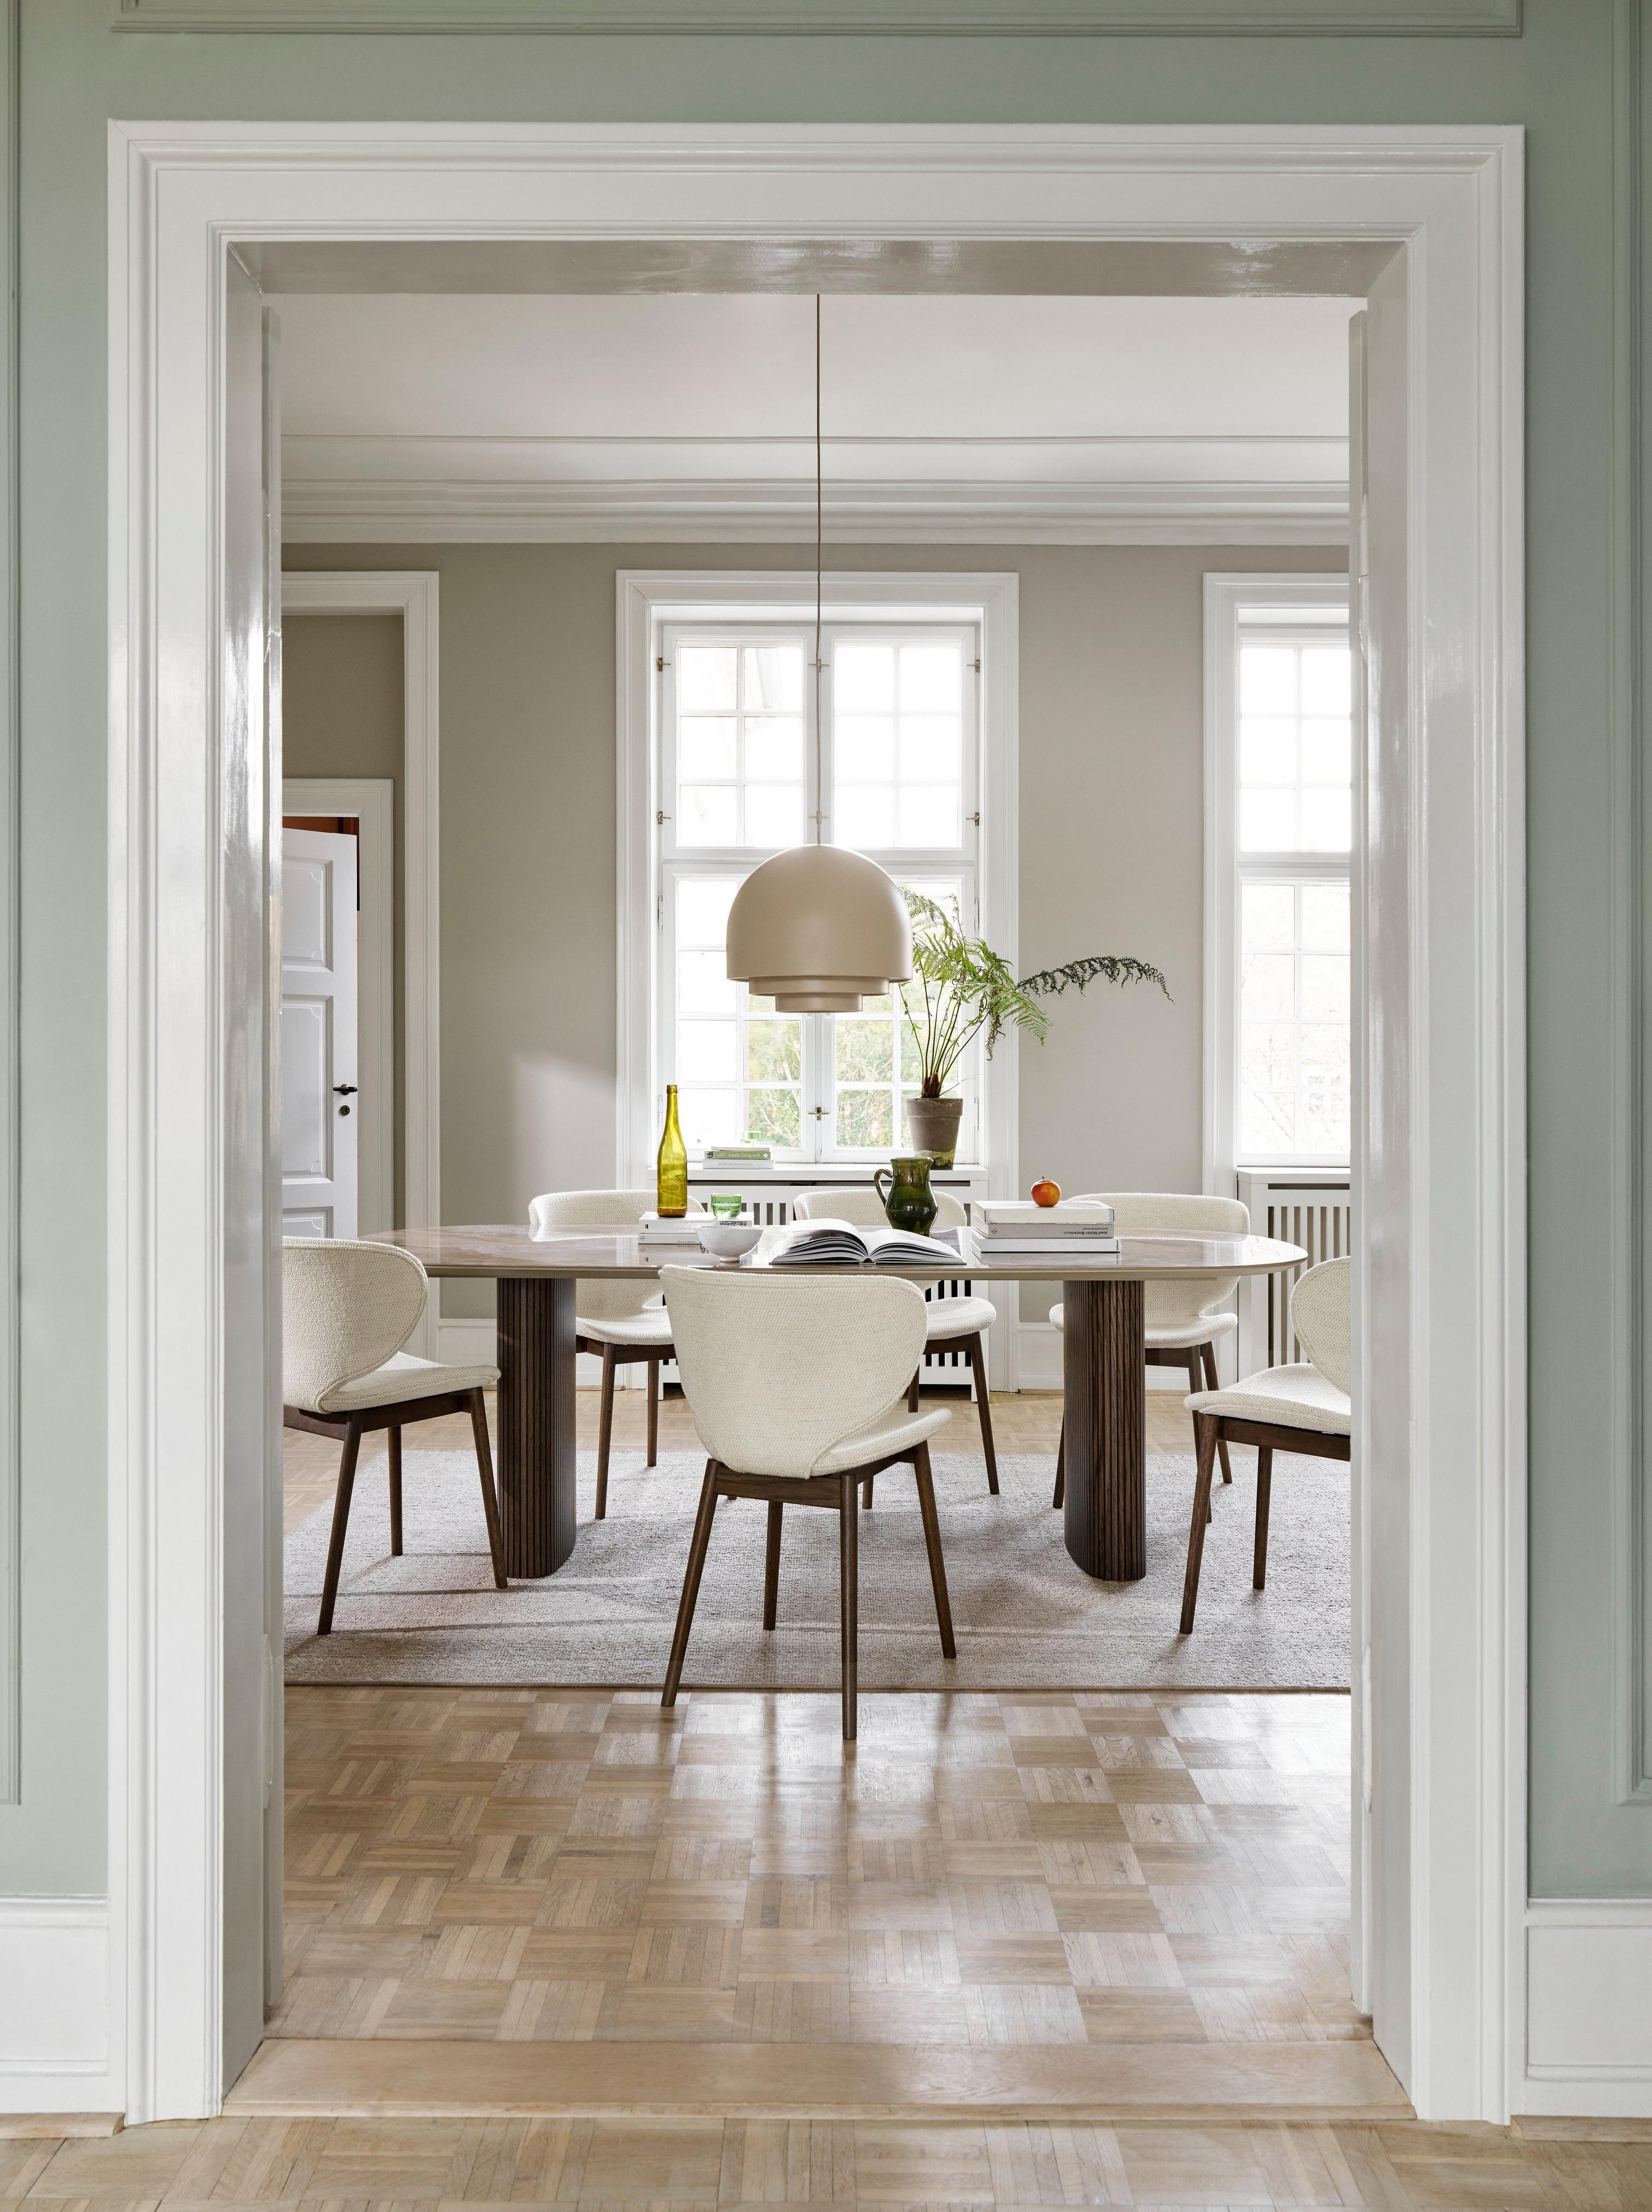 採用 Santiago 餐桌和白色 Lazio 布料 Hamilton 餐椅的寧靜用餐空間。